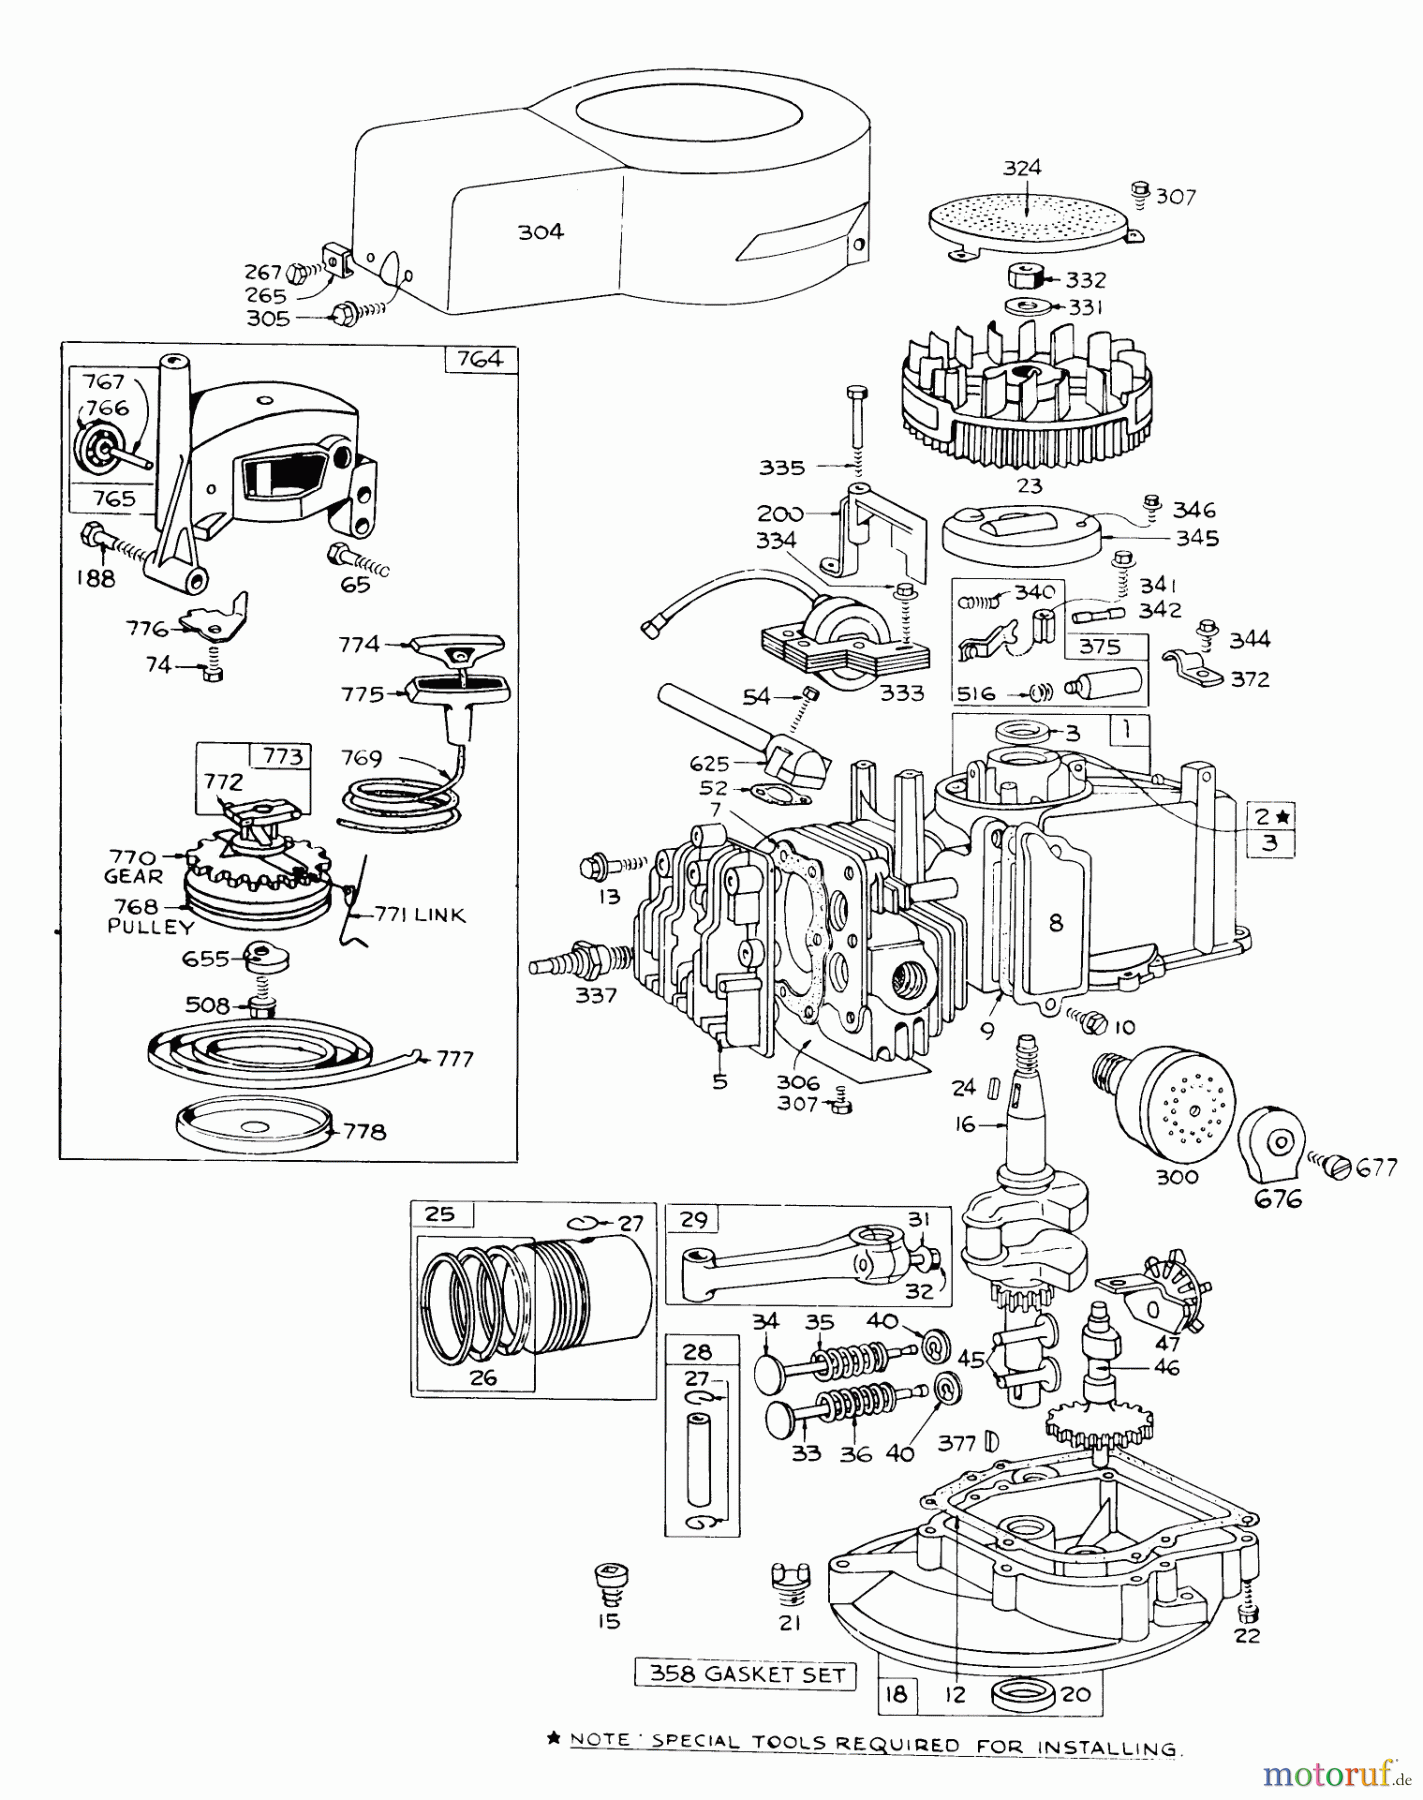  Toro Neu Mowers, Walk-Behind Seite 1 16173 - Toro Whirlwind Lawnmower, 1975 (5000001-5999999) ENGINE BRIGGS & STRATTON 92508-0904-01 FOR 19